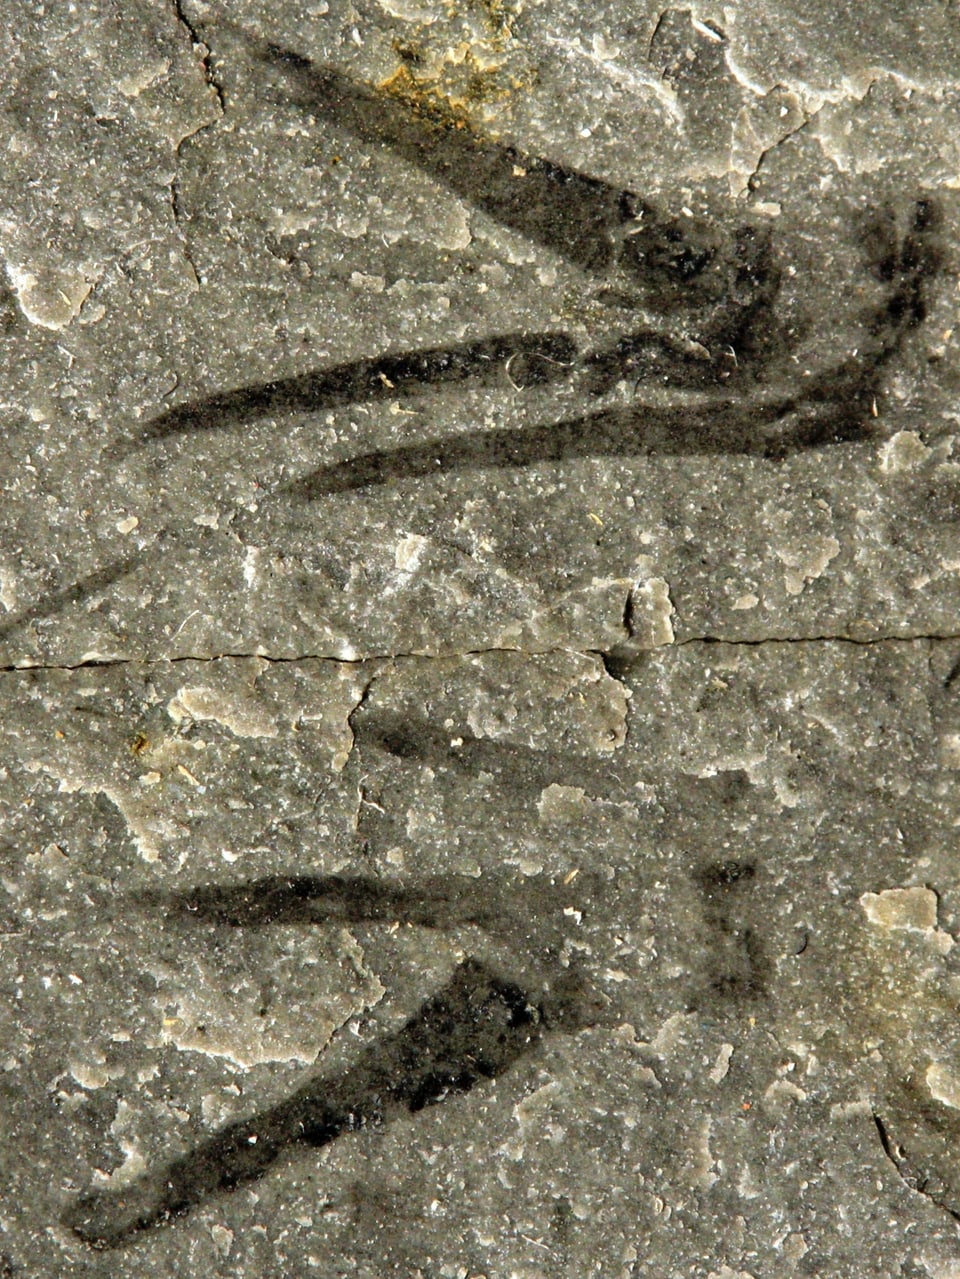 Die fossilisierten Überreste des Tieres mit den seltsam geformten Vordergliedmassen.